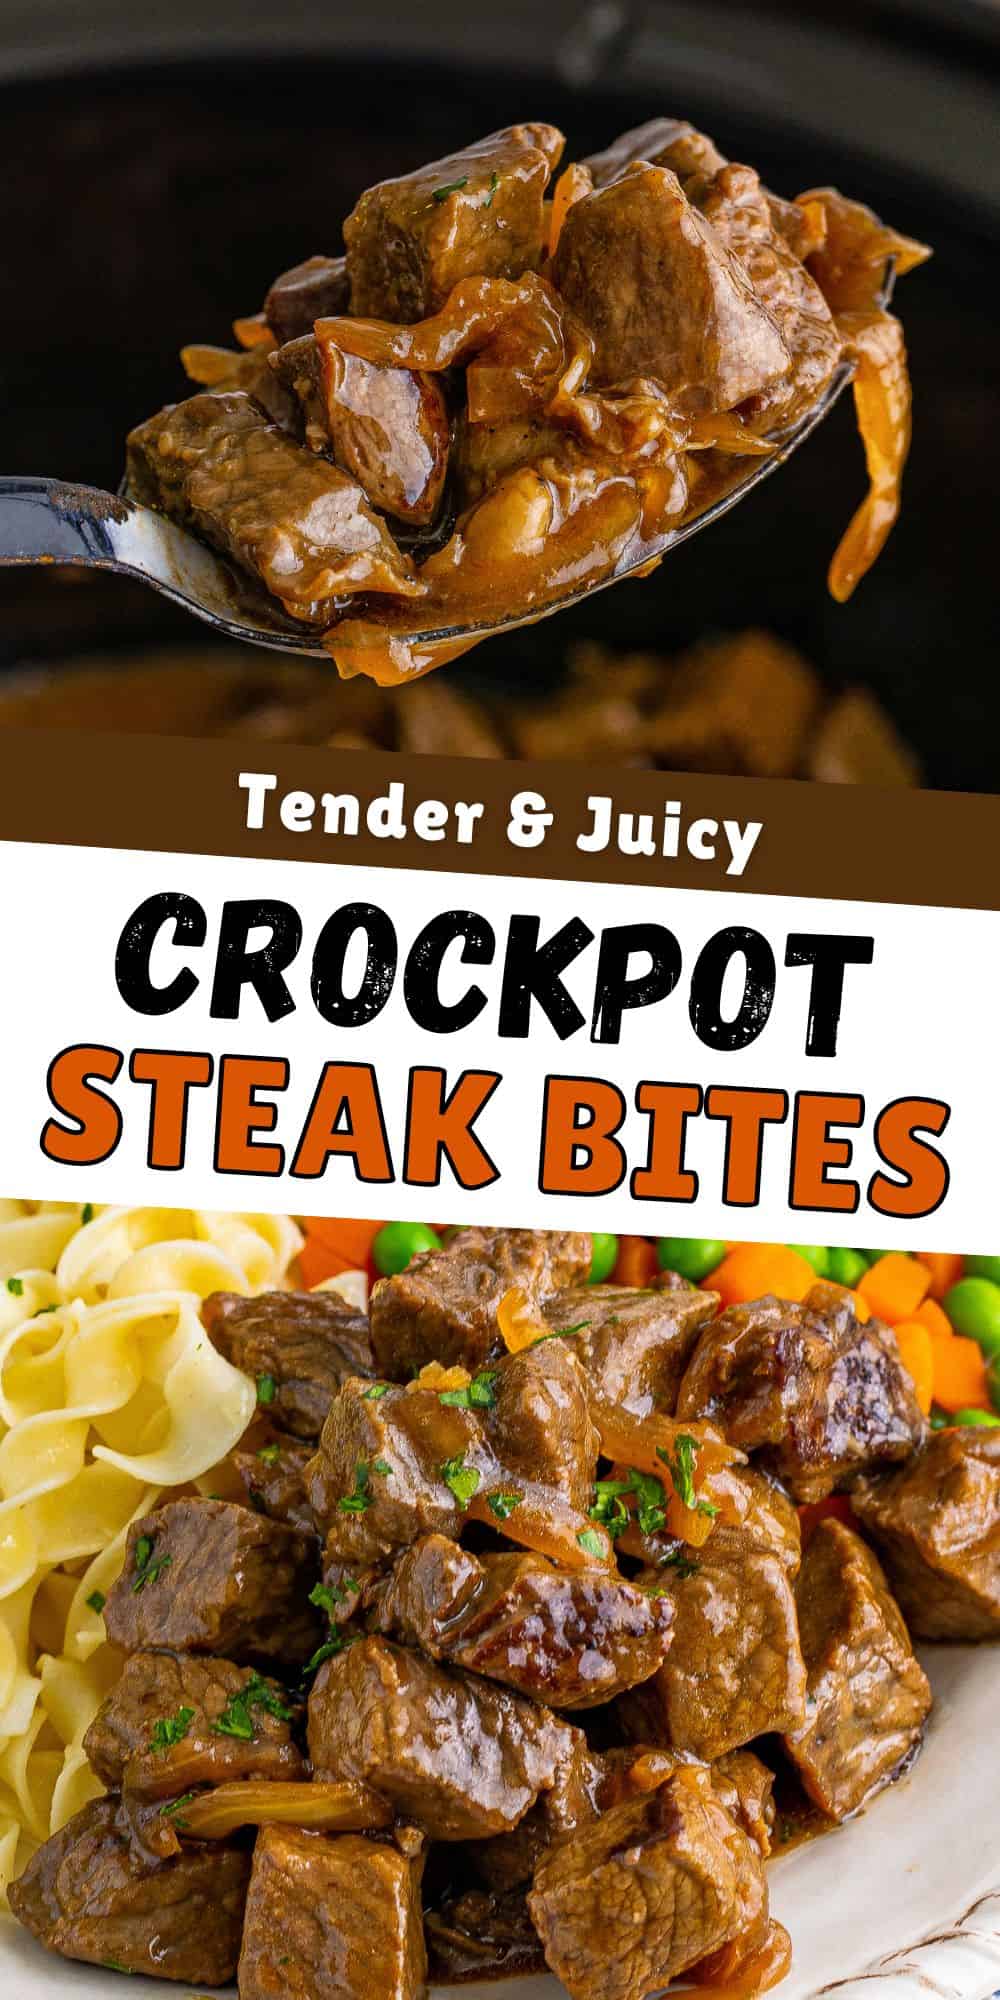 Tender and juicy crockpot steak bites.